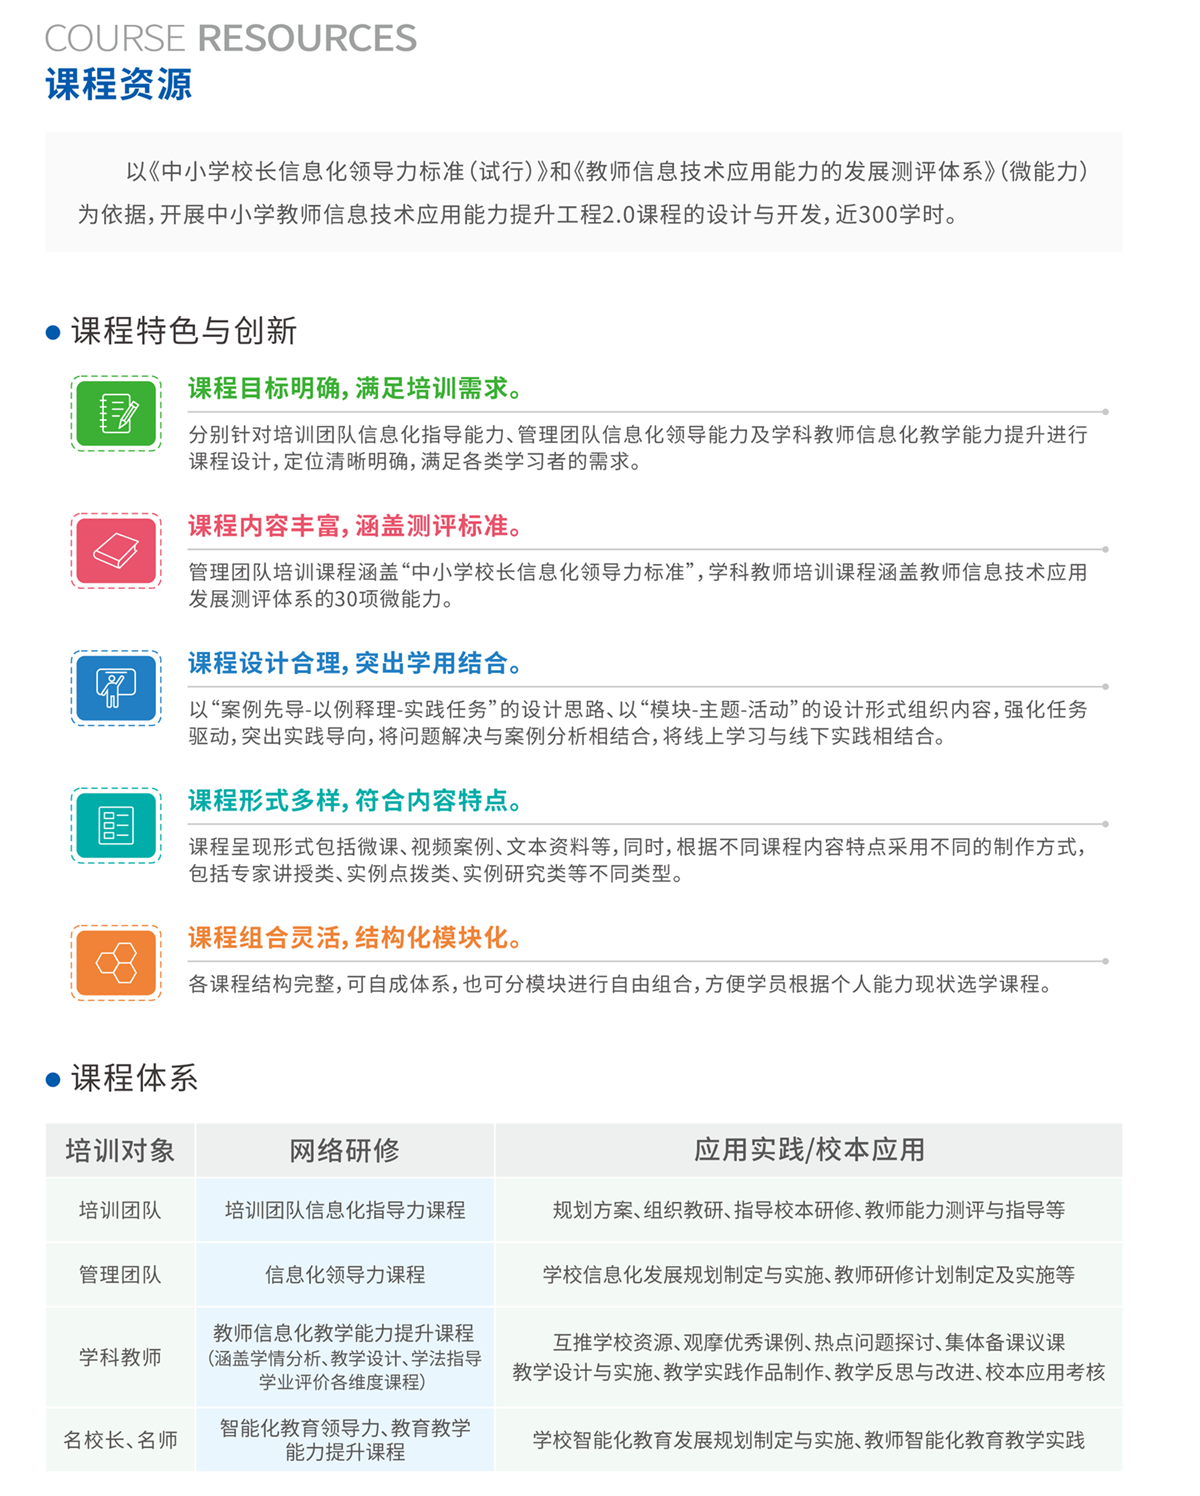 彩简--中小学教师信息技术应用能力提升工程2.0-3.png